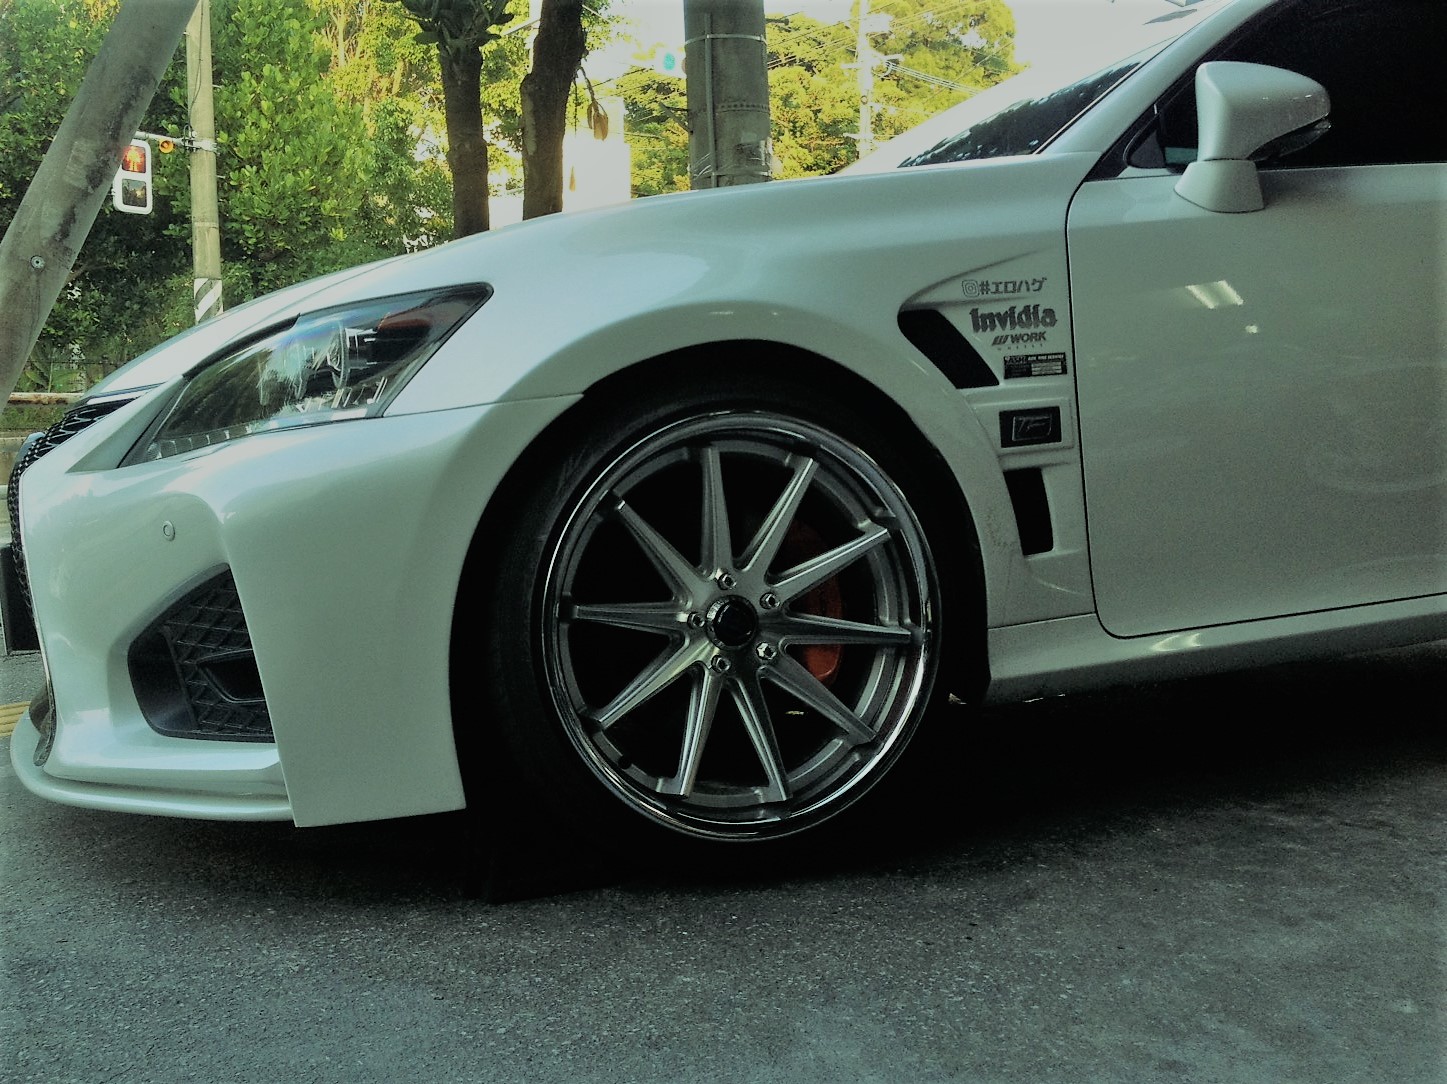 Lexus Gs450h インチ タイヤ交換 沖縄の激安タイヤ販売店 持ち込みタイヤ取付店 Askタイヤサービス